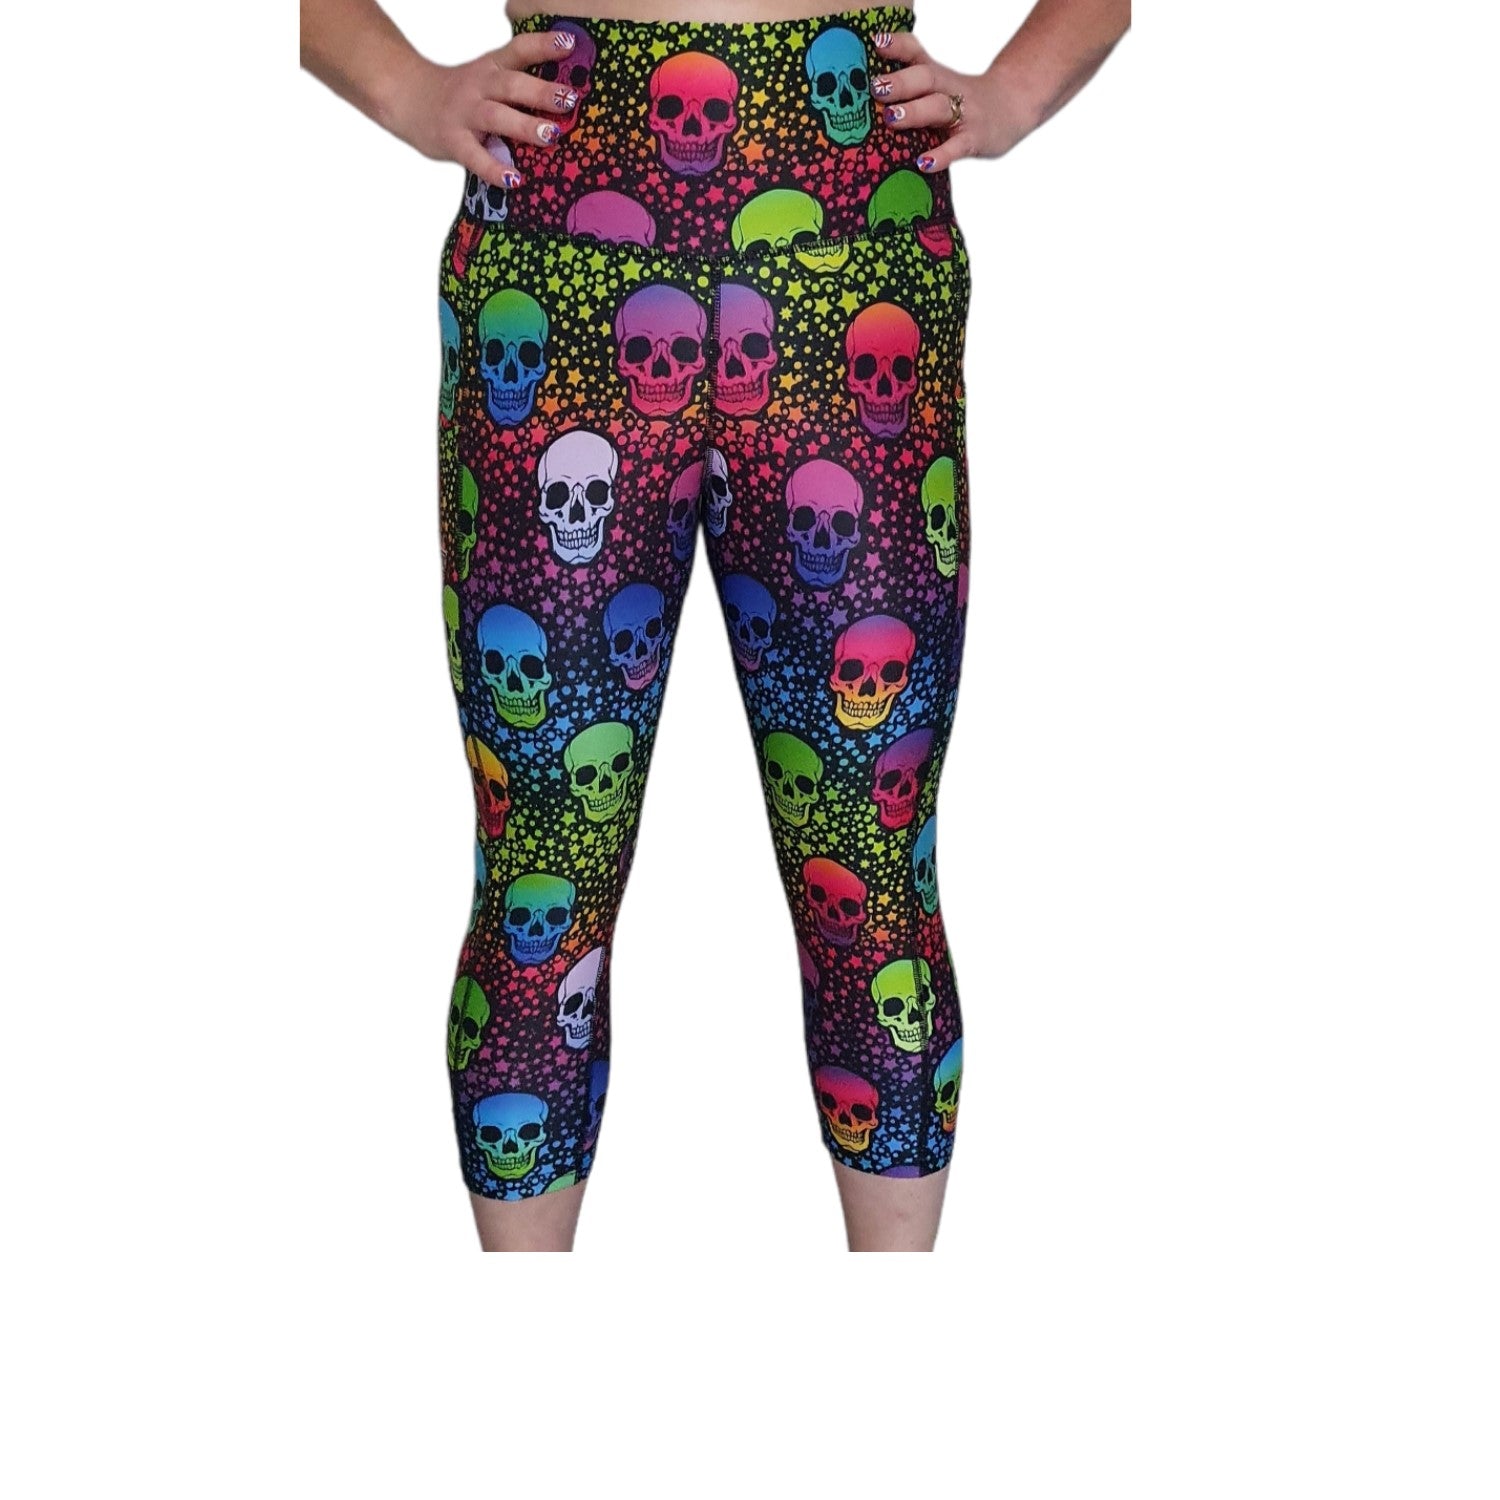 Funky Fit HI Capri Gym leggings- Neon Star Skulls